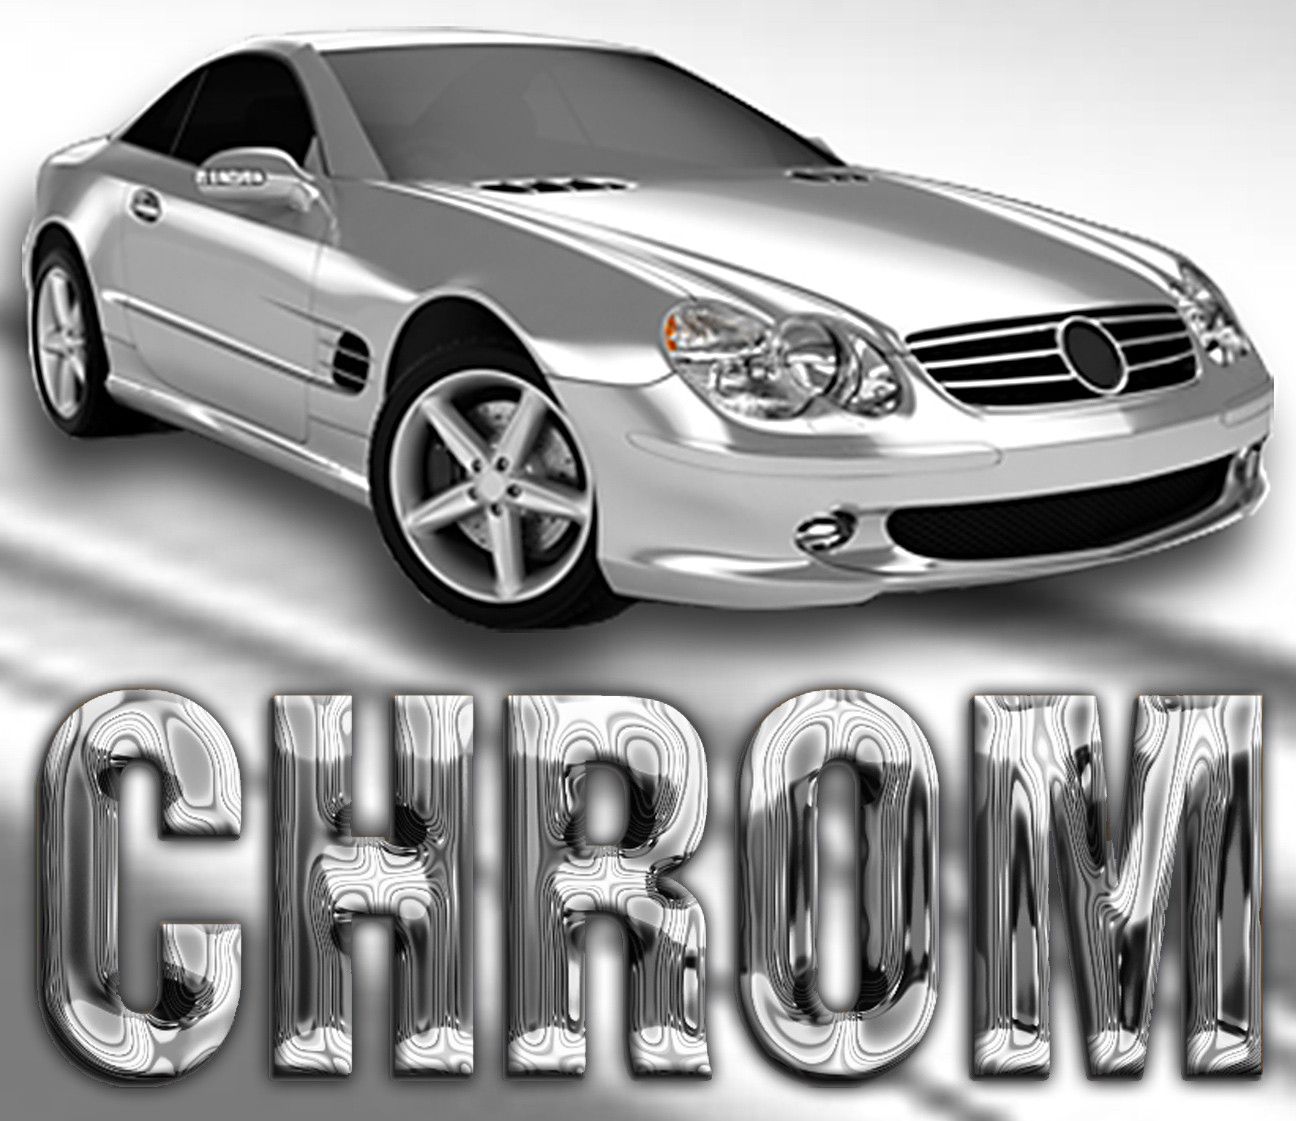 Chrome-Autofolie Silber Glanz, Shop für alle Werbe Produkte von A - Z